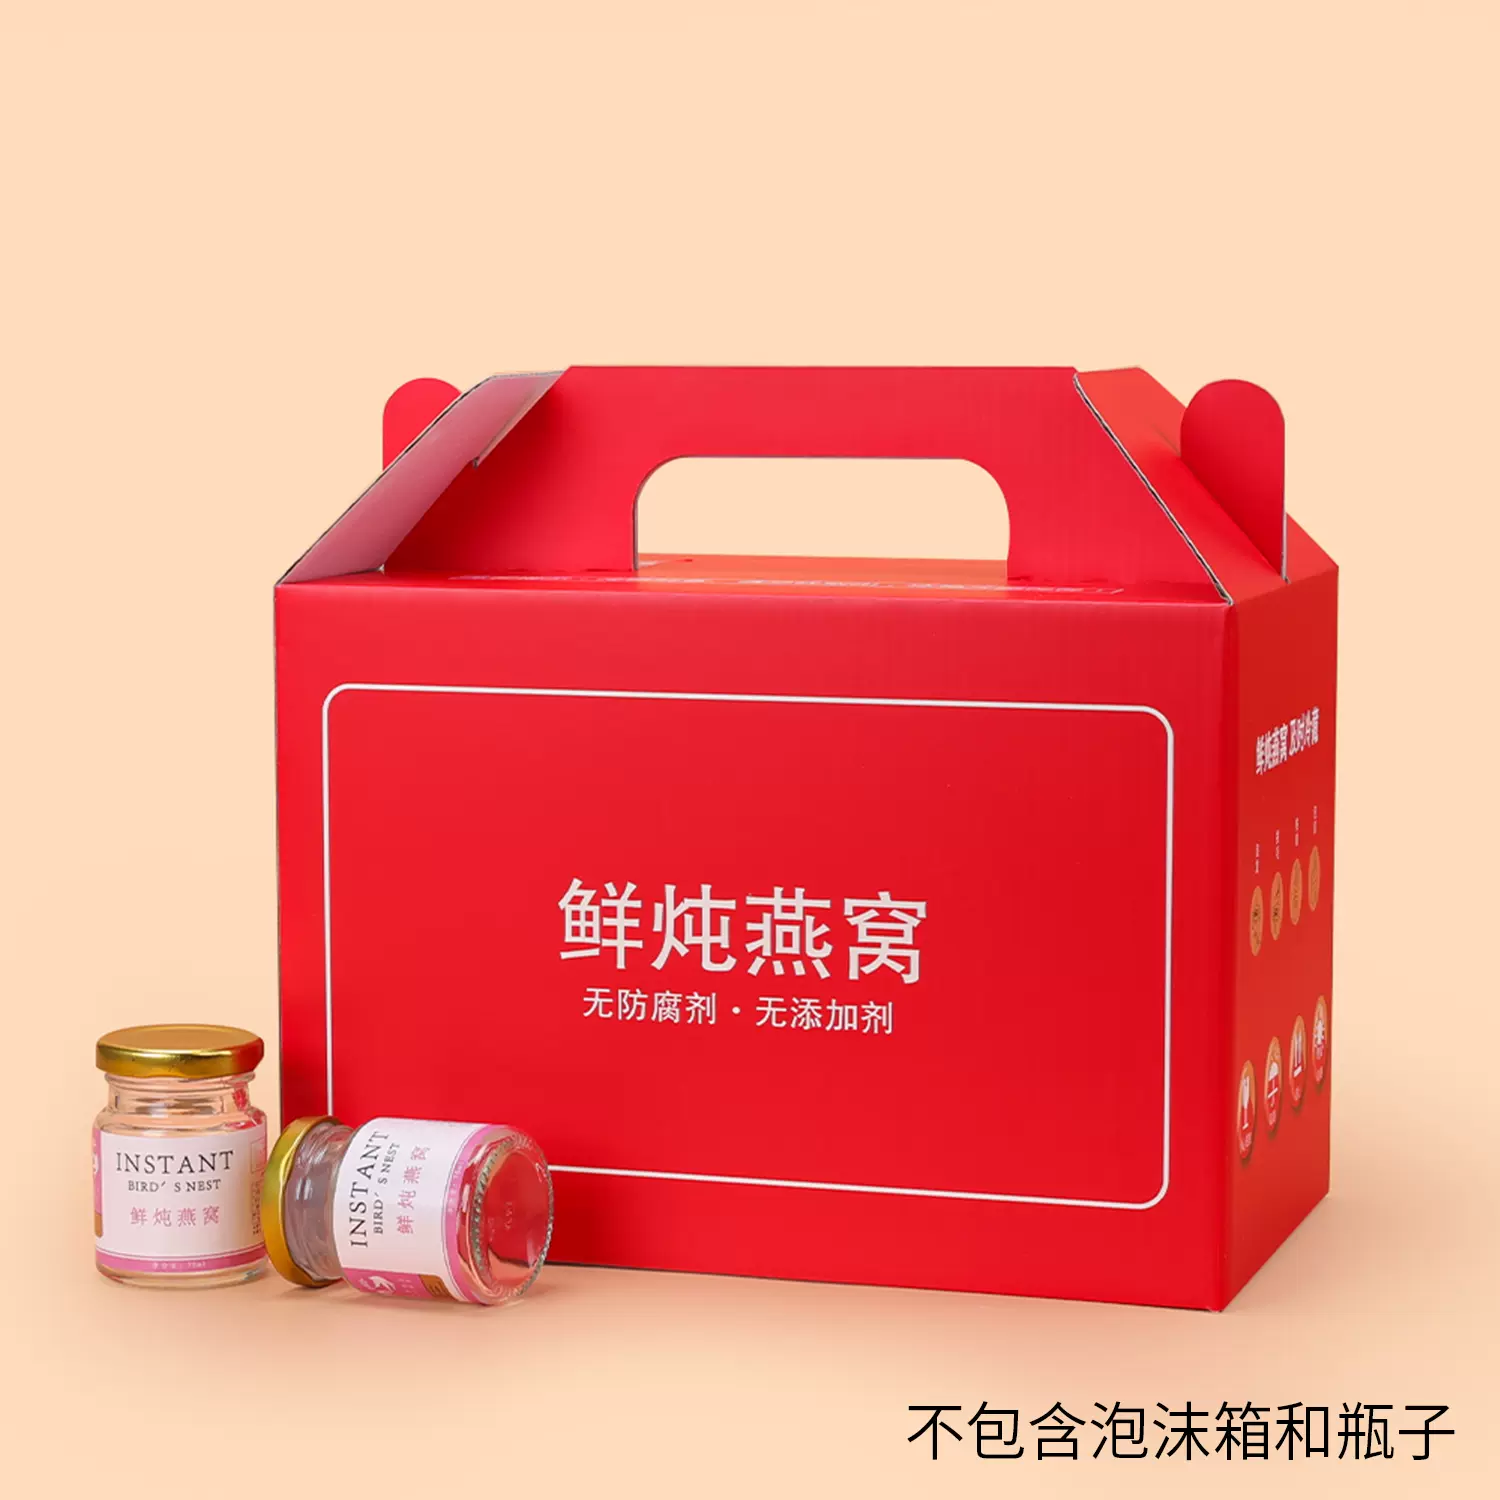 新款鲜炖燕窝包装盒即食燕窝环保恒温箱可放冰袋纸盒克定制LOGO-Taobao